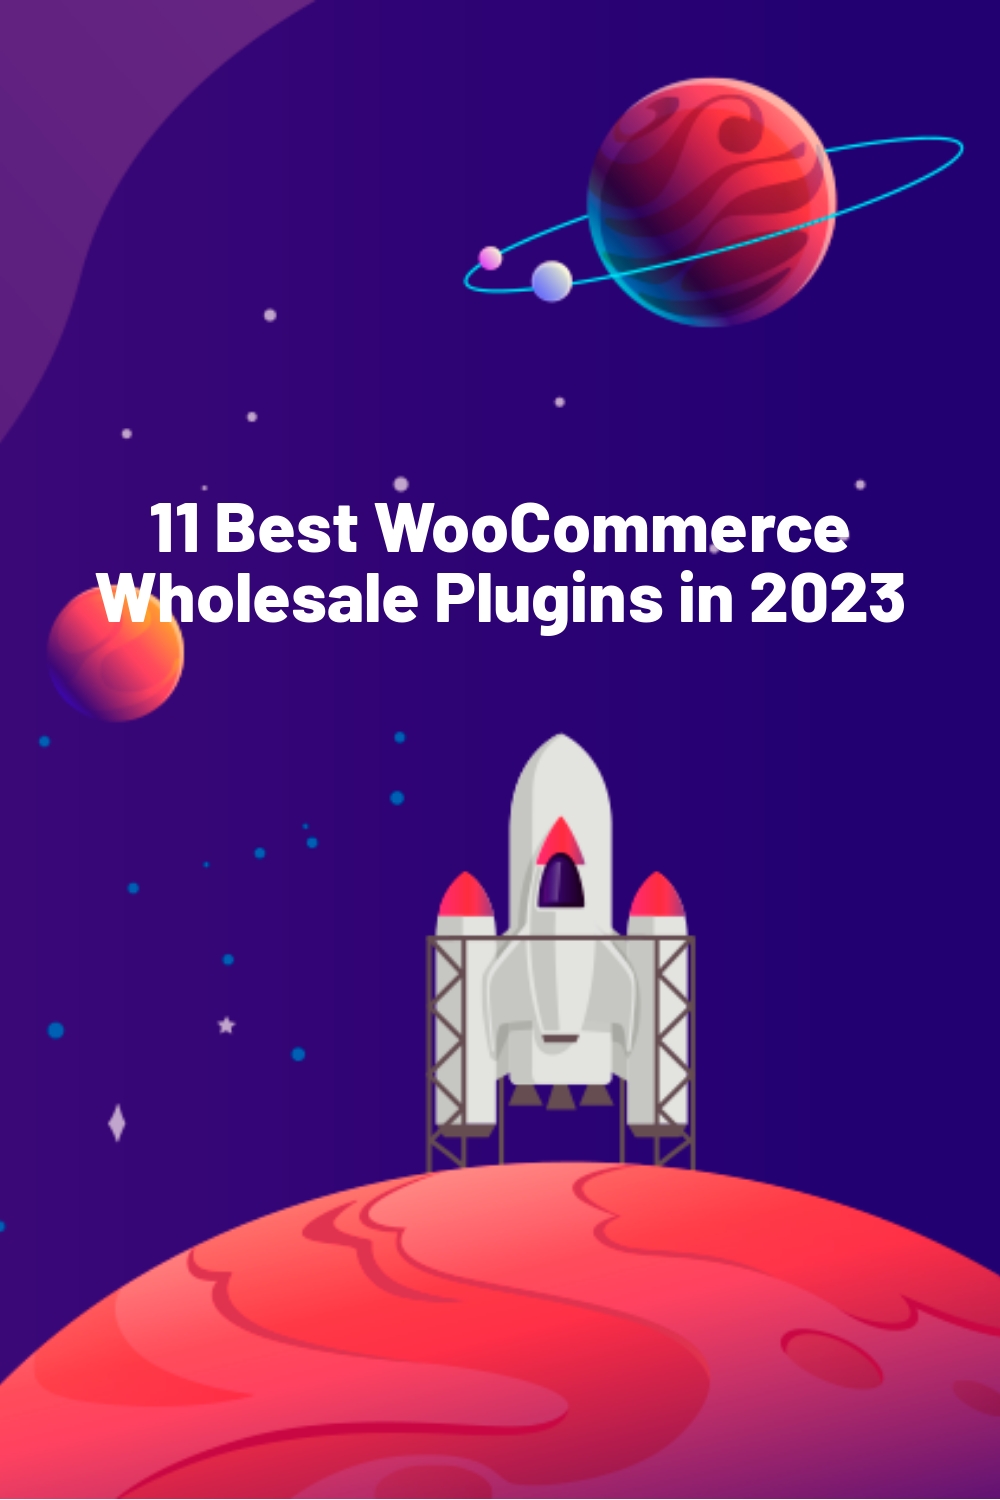 11 Best WooCommerce Wholesale Plugins in 2023